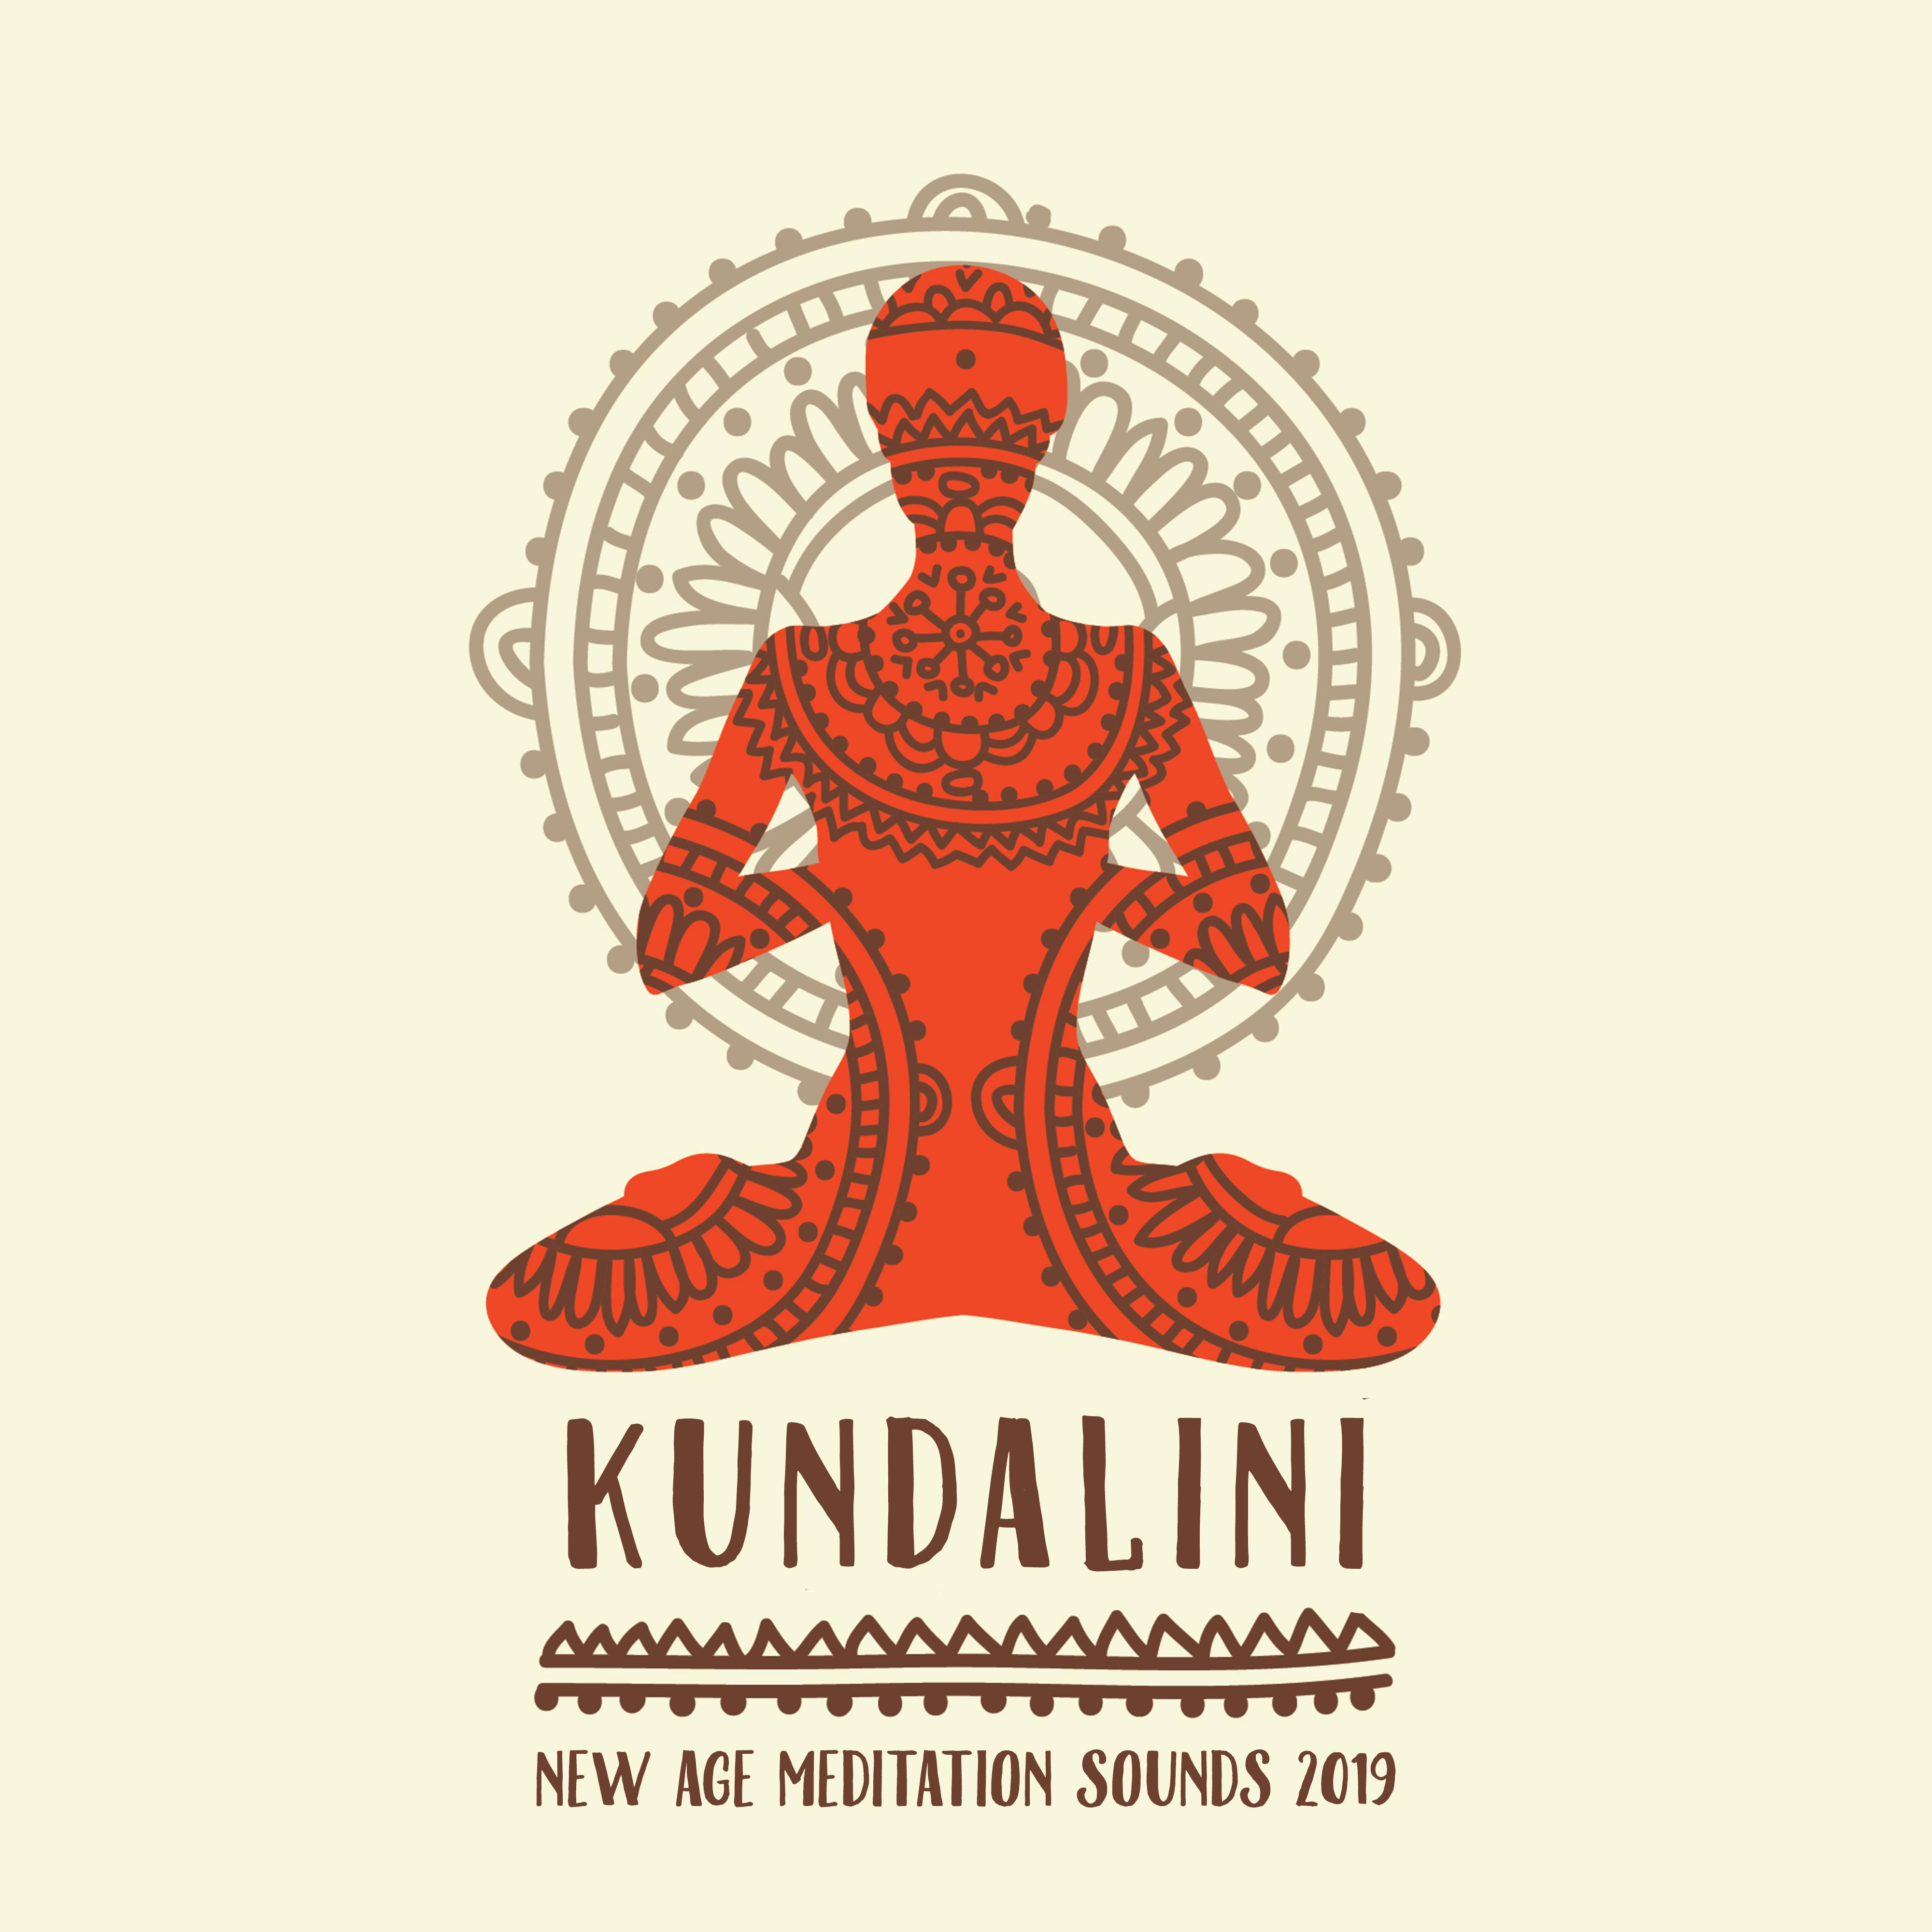 Kundalini New Age Meditation Sounds 2019